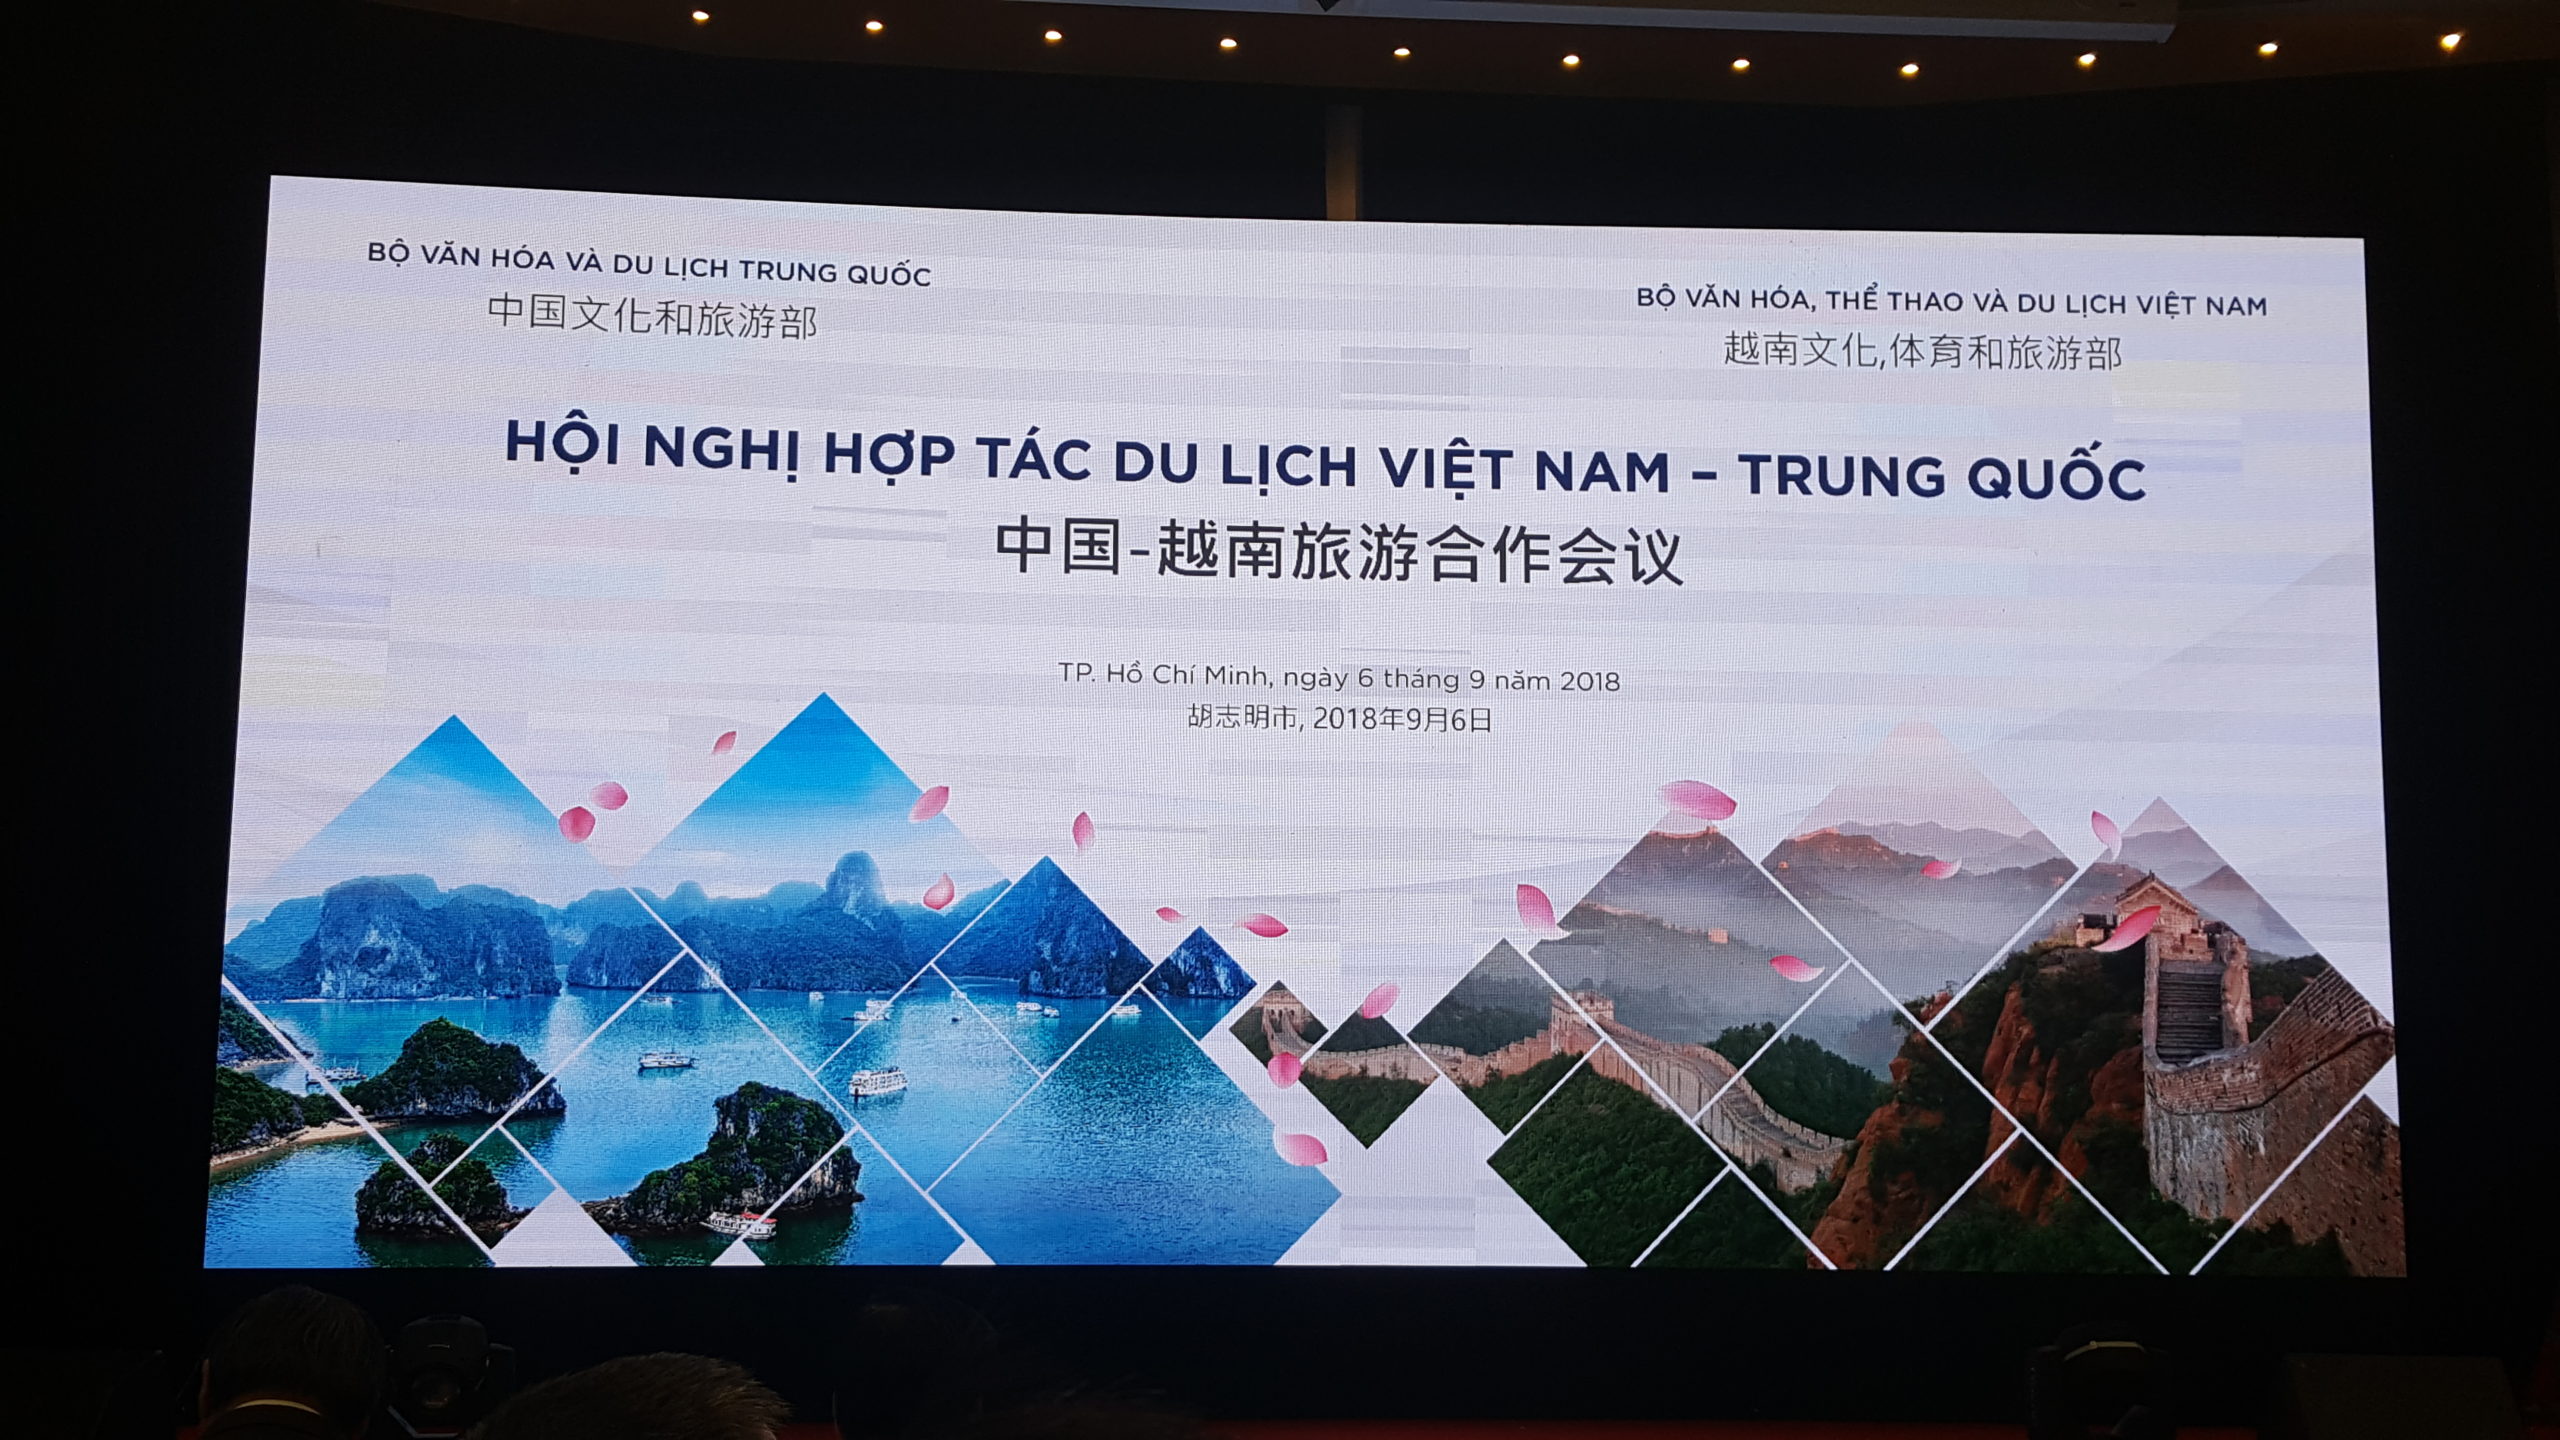 International Travel Fair for Vietnam – 6-8 September 2018